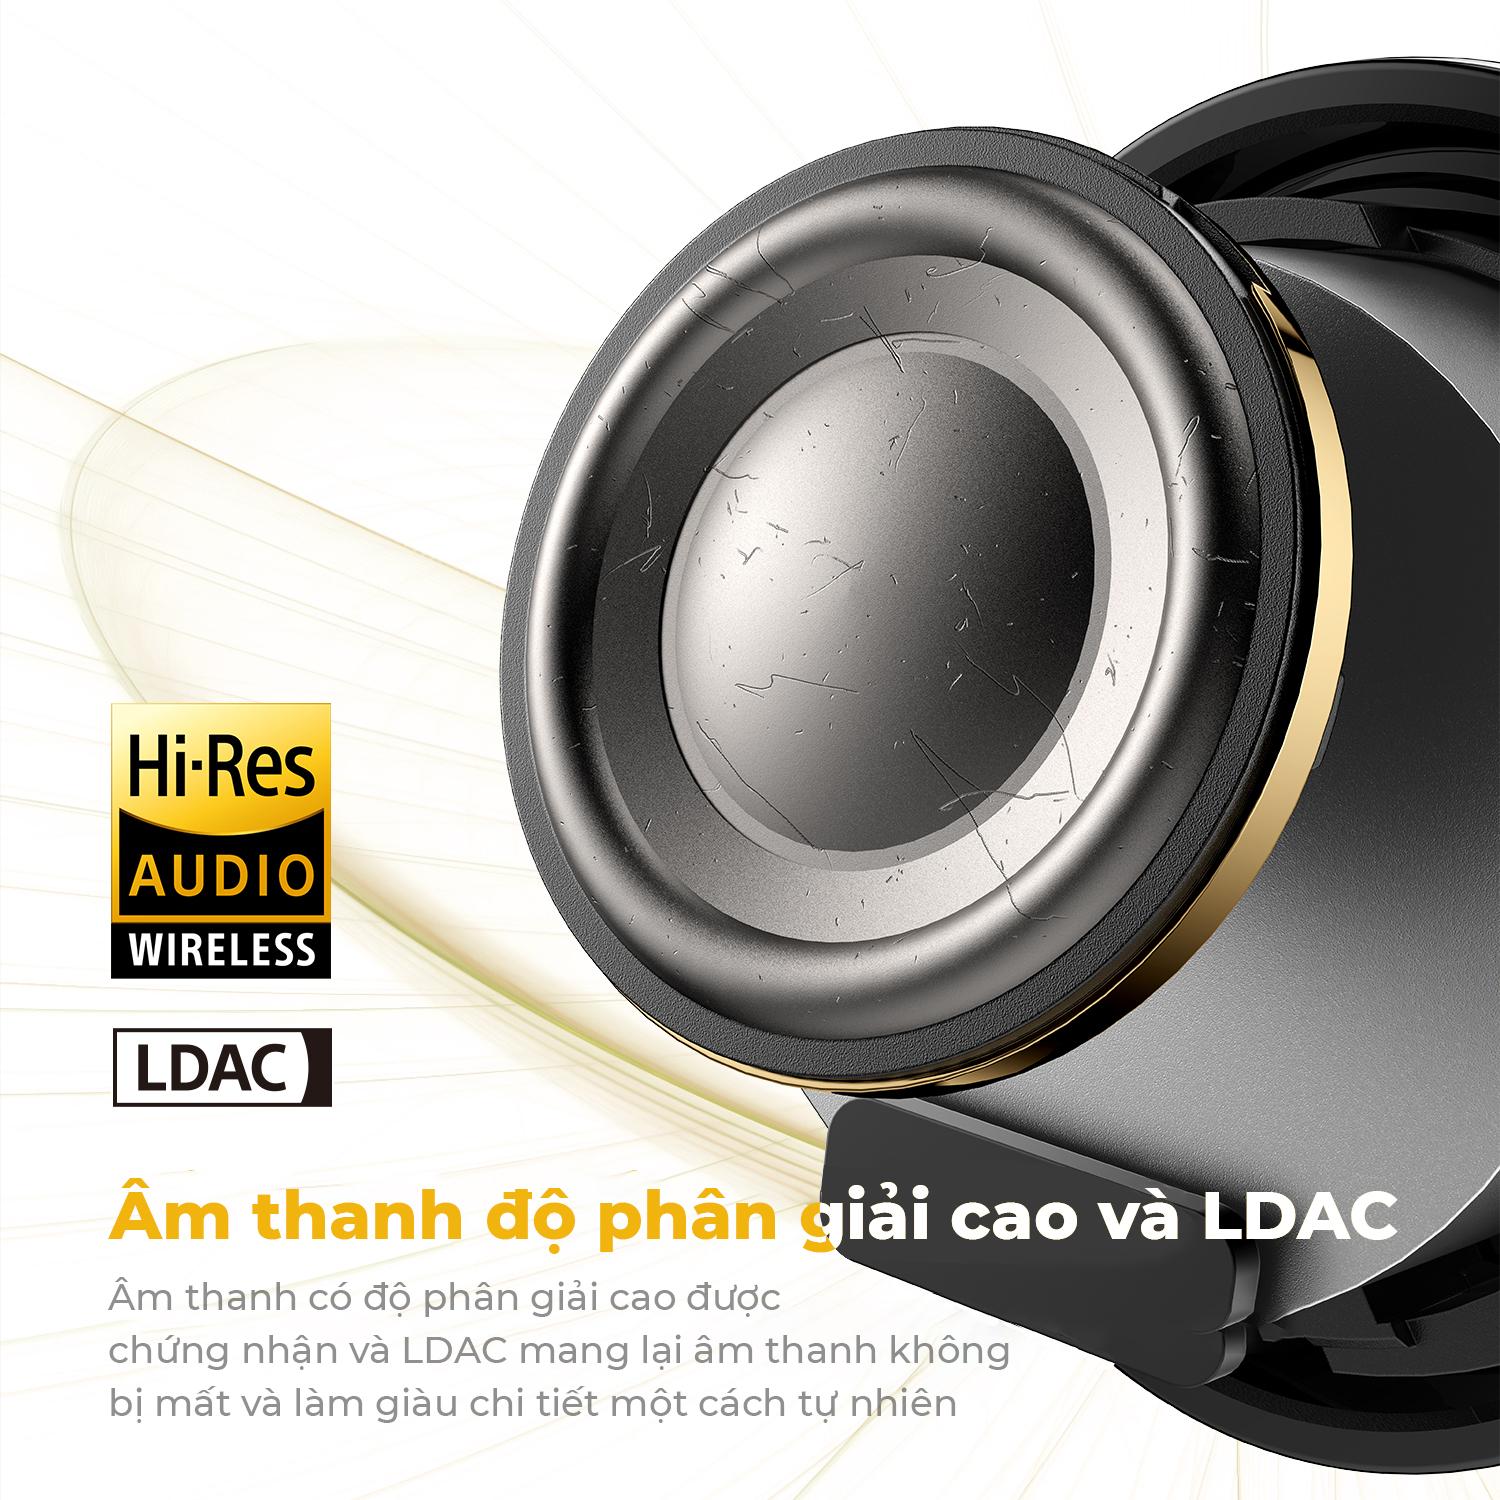 Công nghệ âm thanh LDAC nâng tầm tai nghe Soundpeats như thế nào? - Ảnh 4.